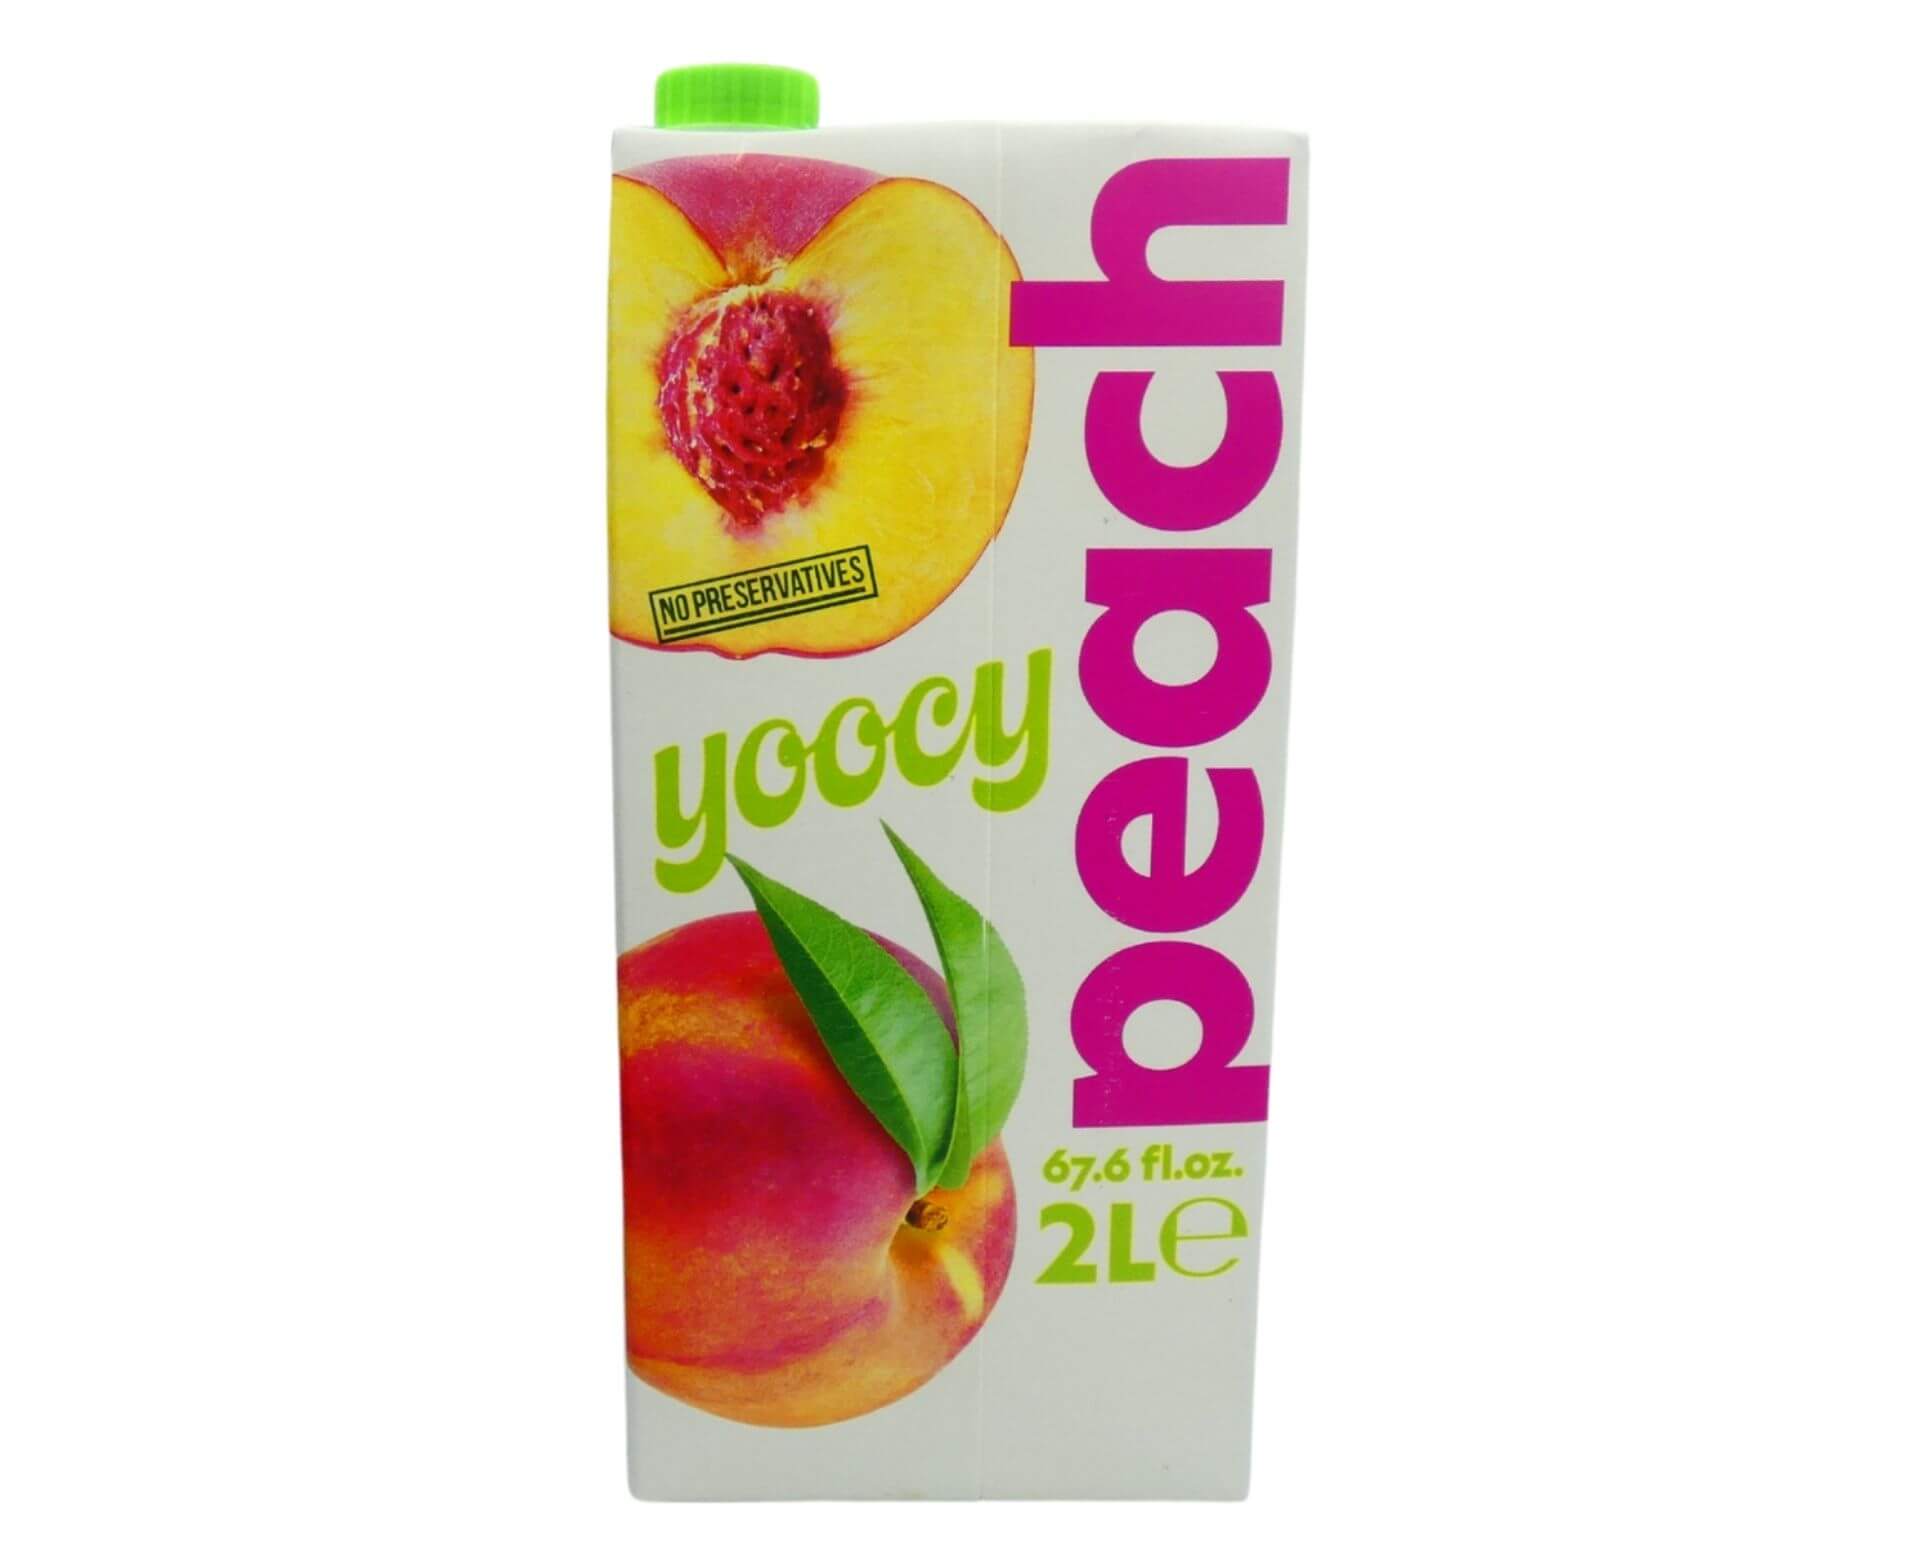 Yoocy Peach Fruit Drink (2 lt) - Aytac Foods